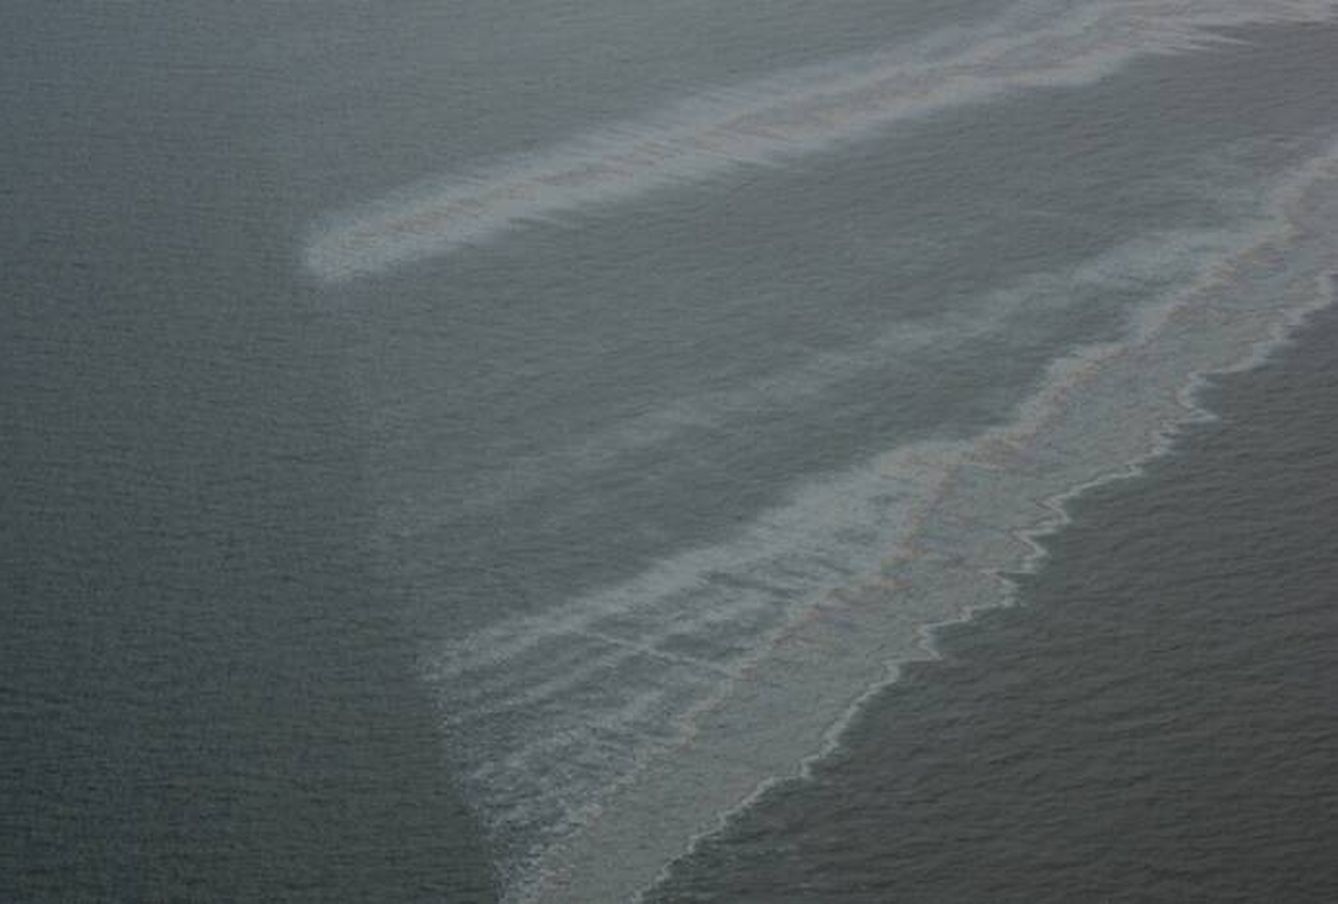 Manchas de aceite y petróleo en la costa caribeña de EEUU. (Ian MacDonald, Florida State University)